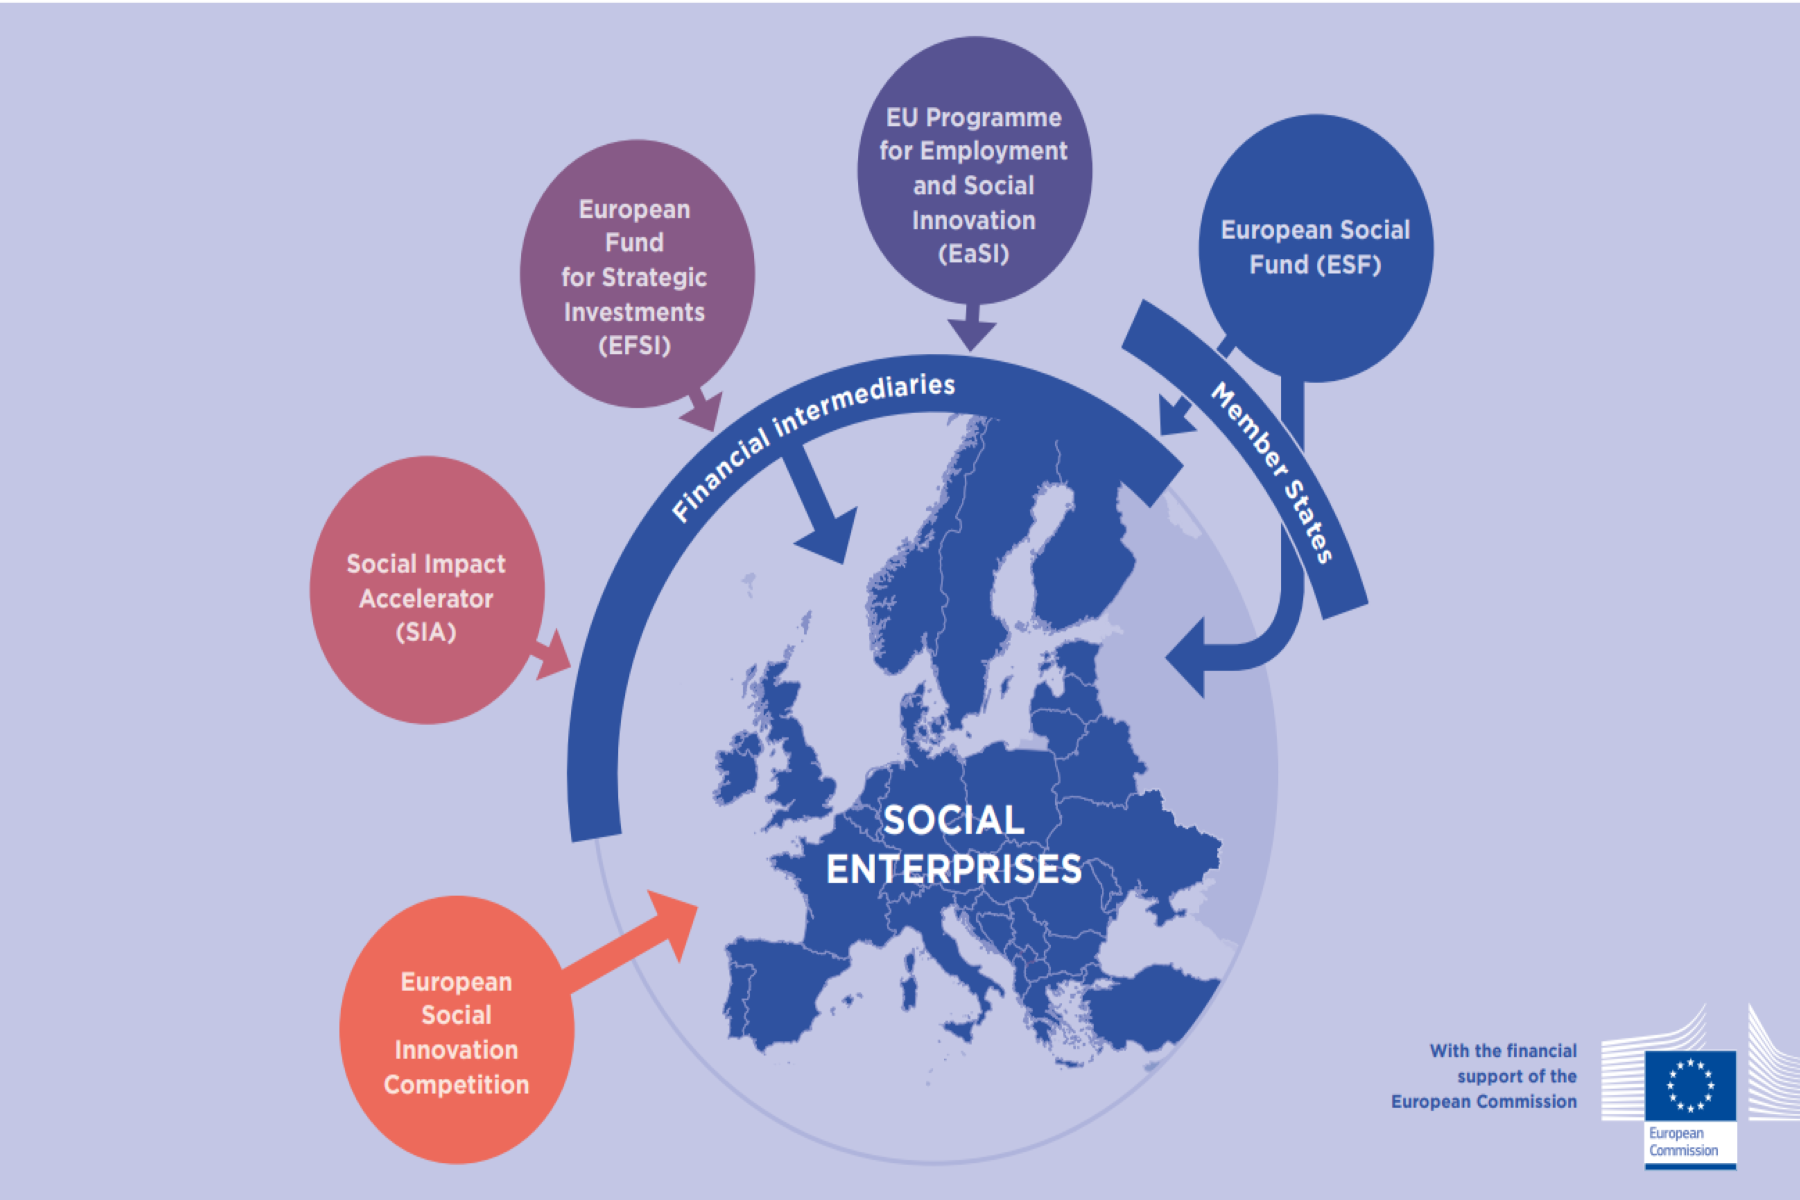 EU Funding for Social Entrepreneurship - Overview